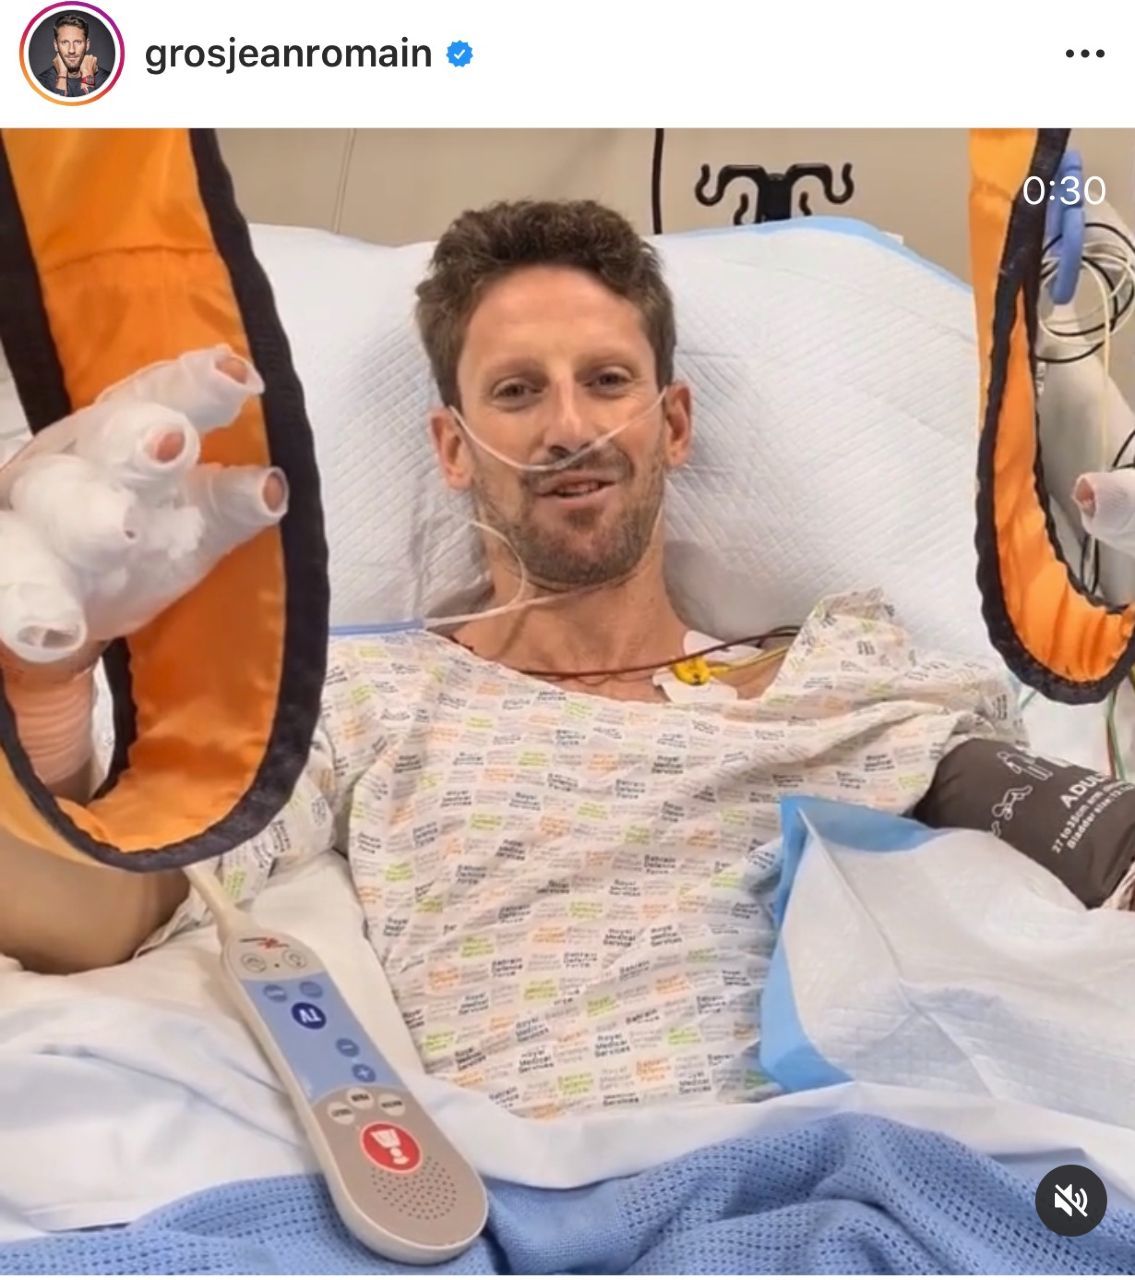 Grosjeans erstes Video aus dem Spital: 